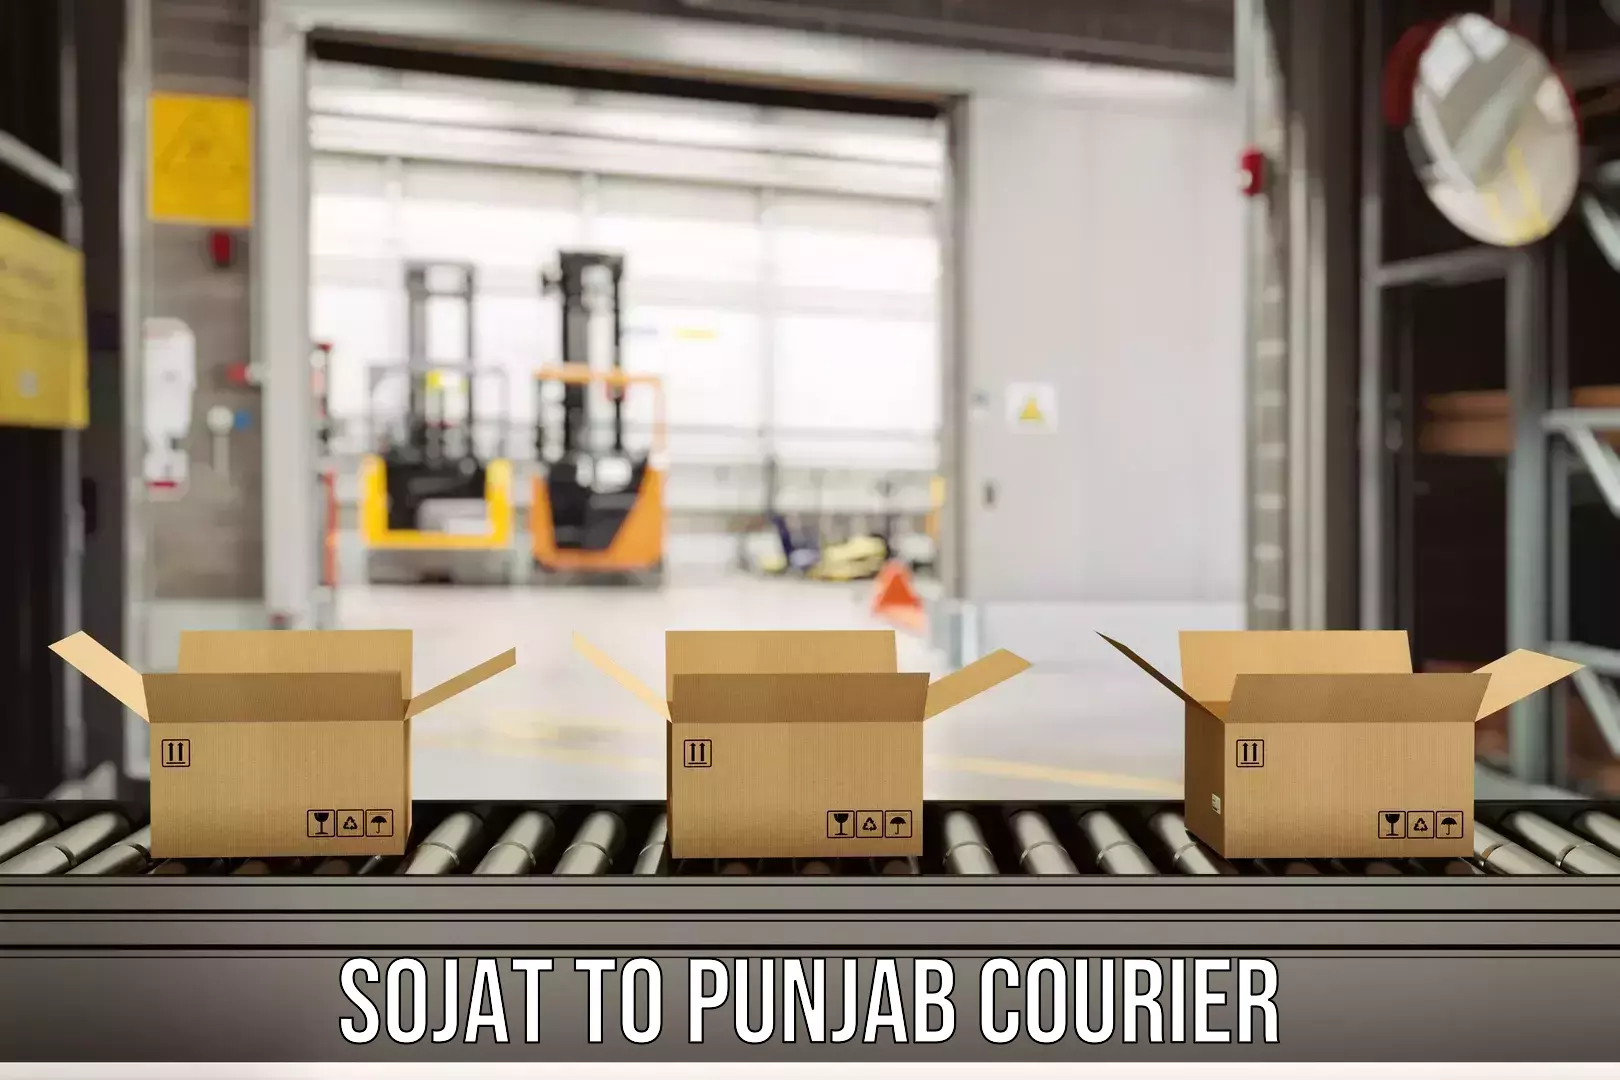 Enhanced tracking features Sojat to Punjab